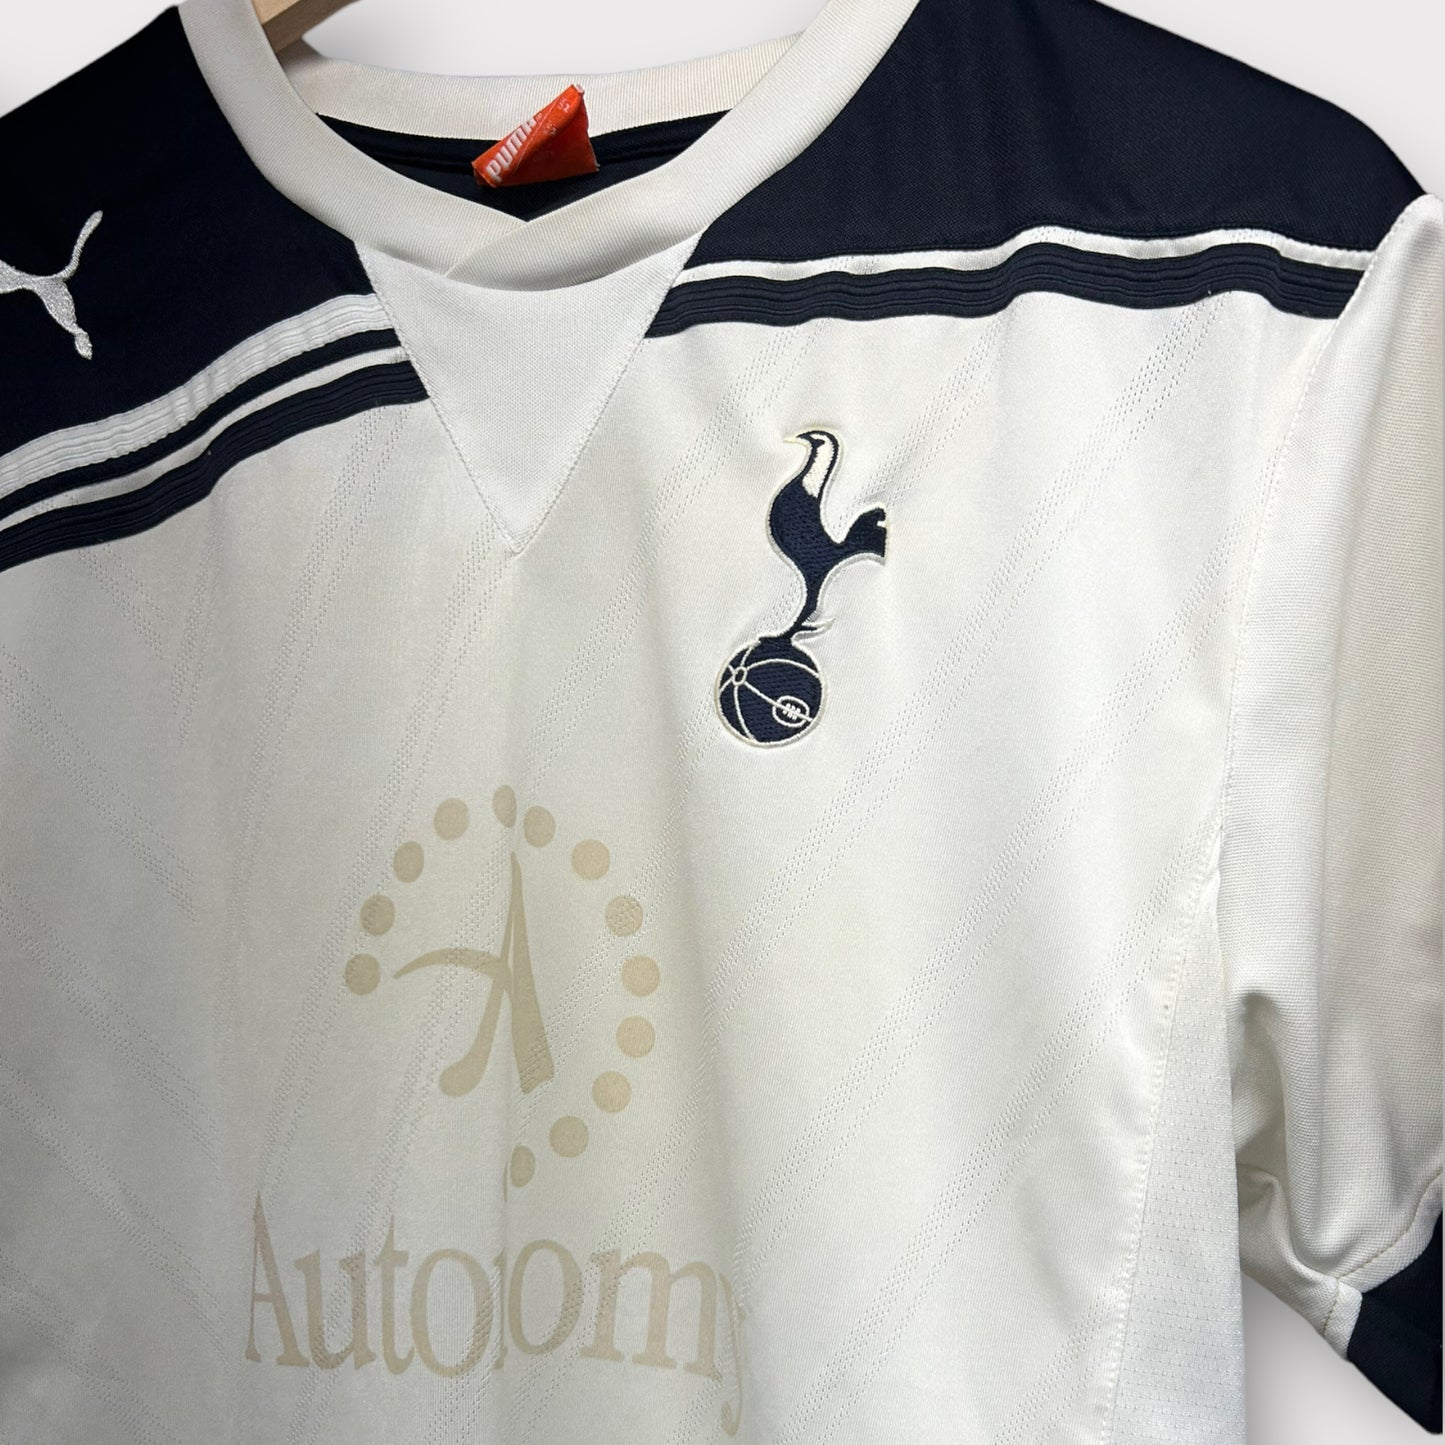 Spurs 2010/11 Home Shirt - Van der Vaart 11 (Medium)